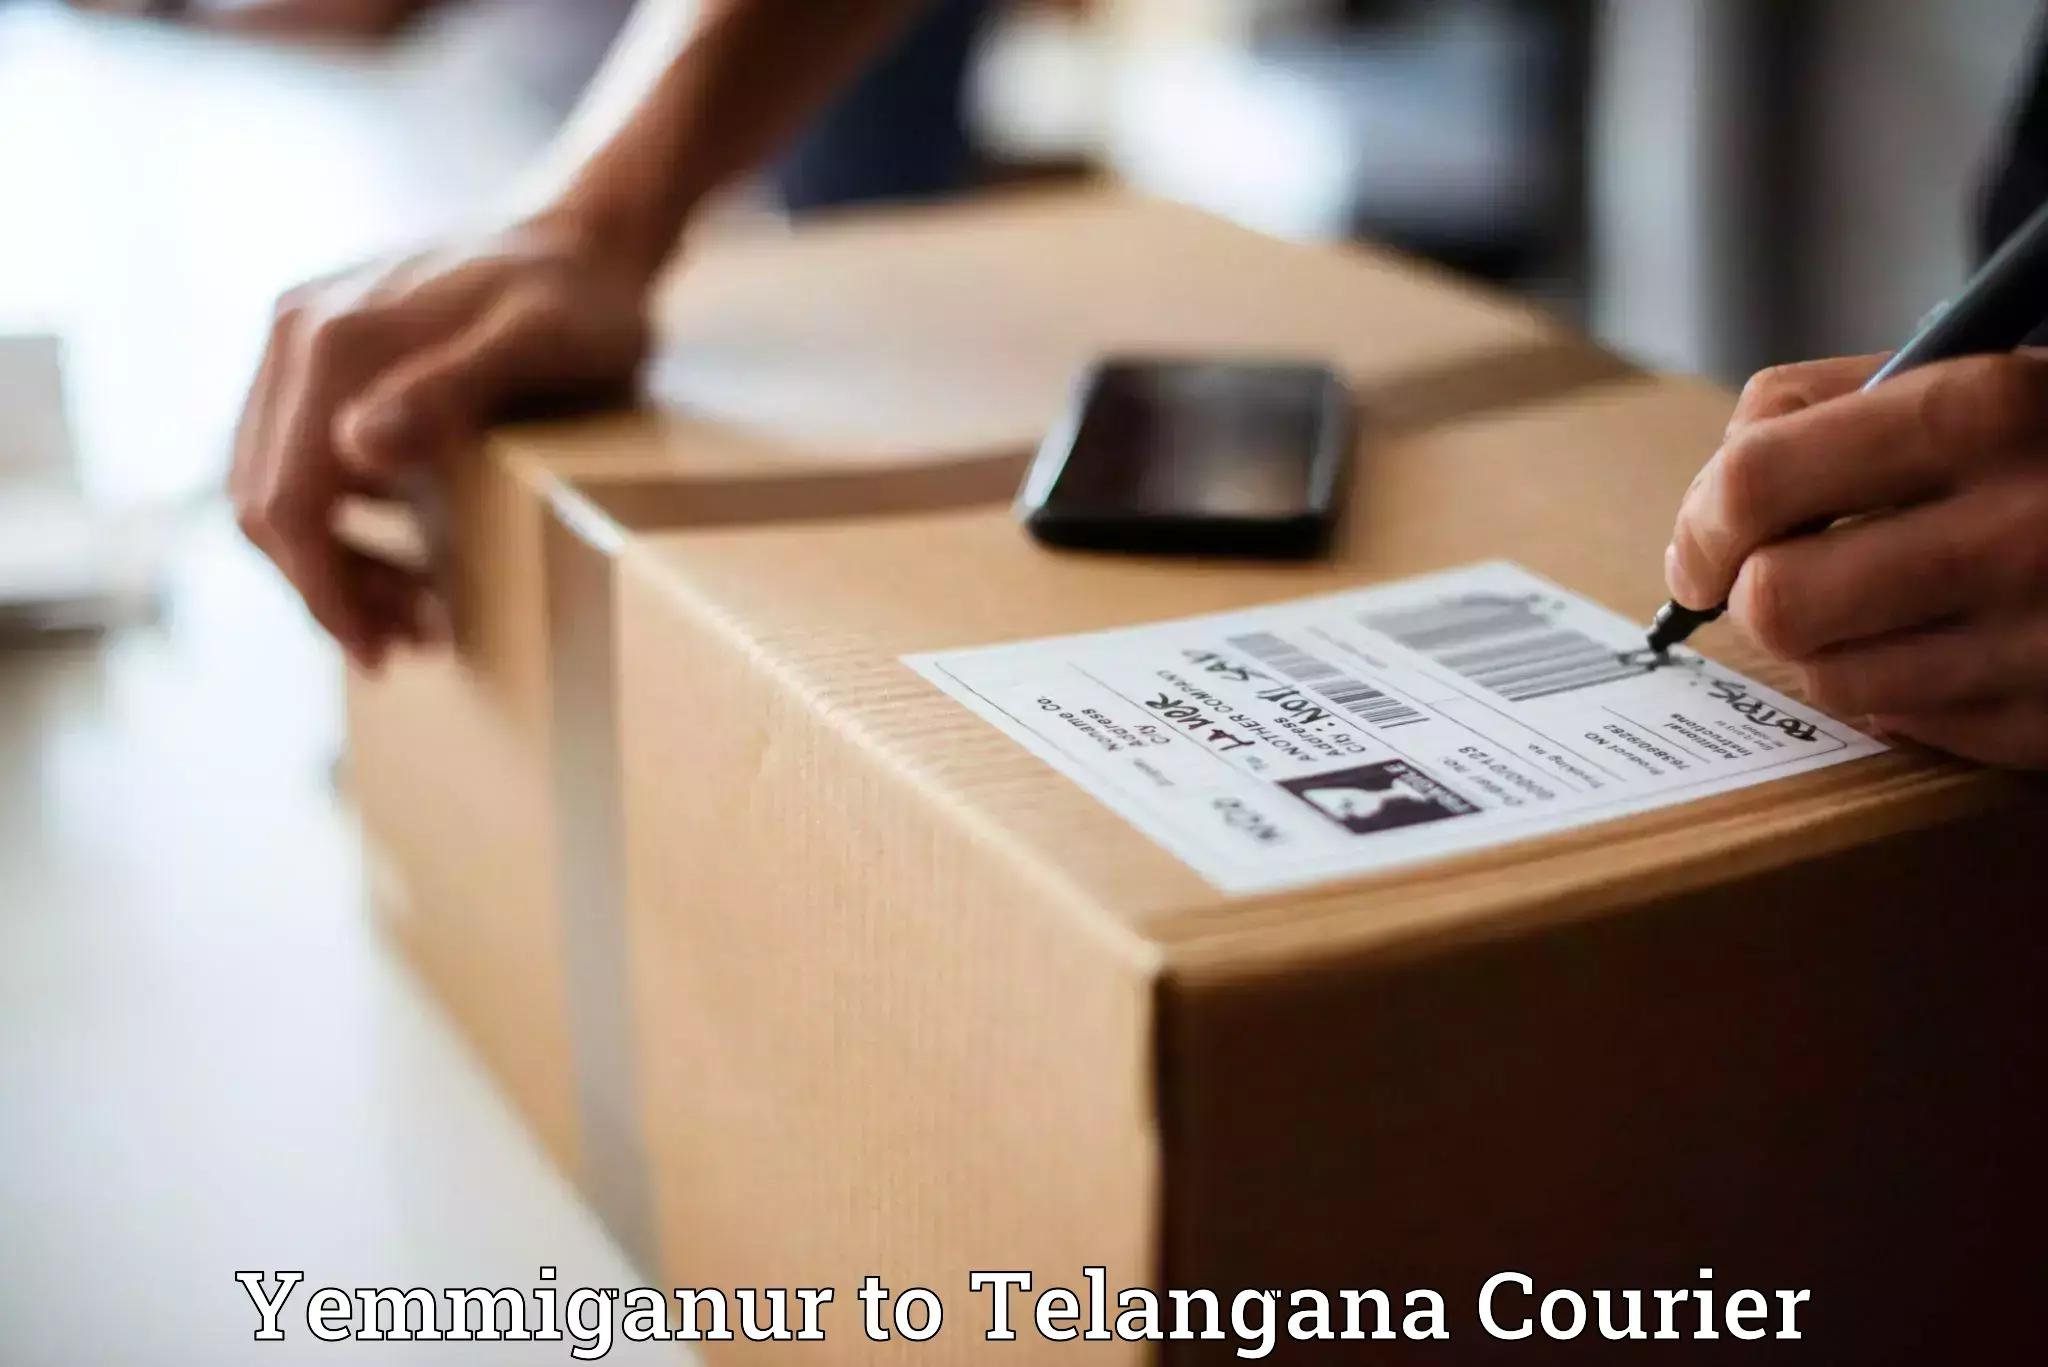 Package tracking Yemmiganur to Dharmapuri Jagtial